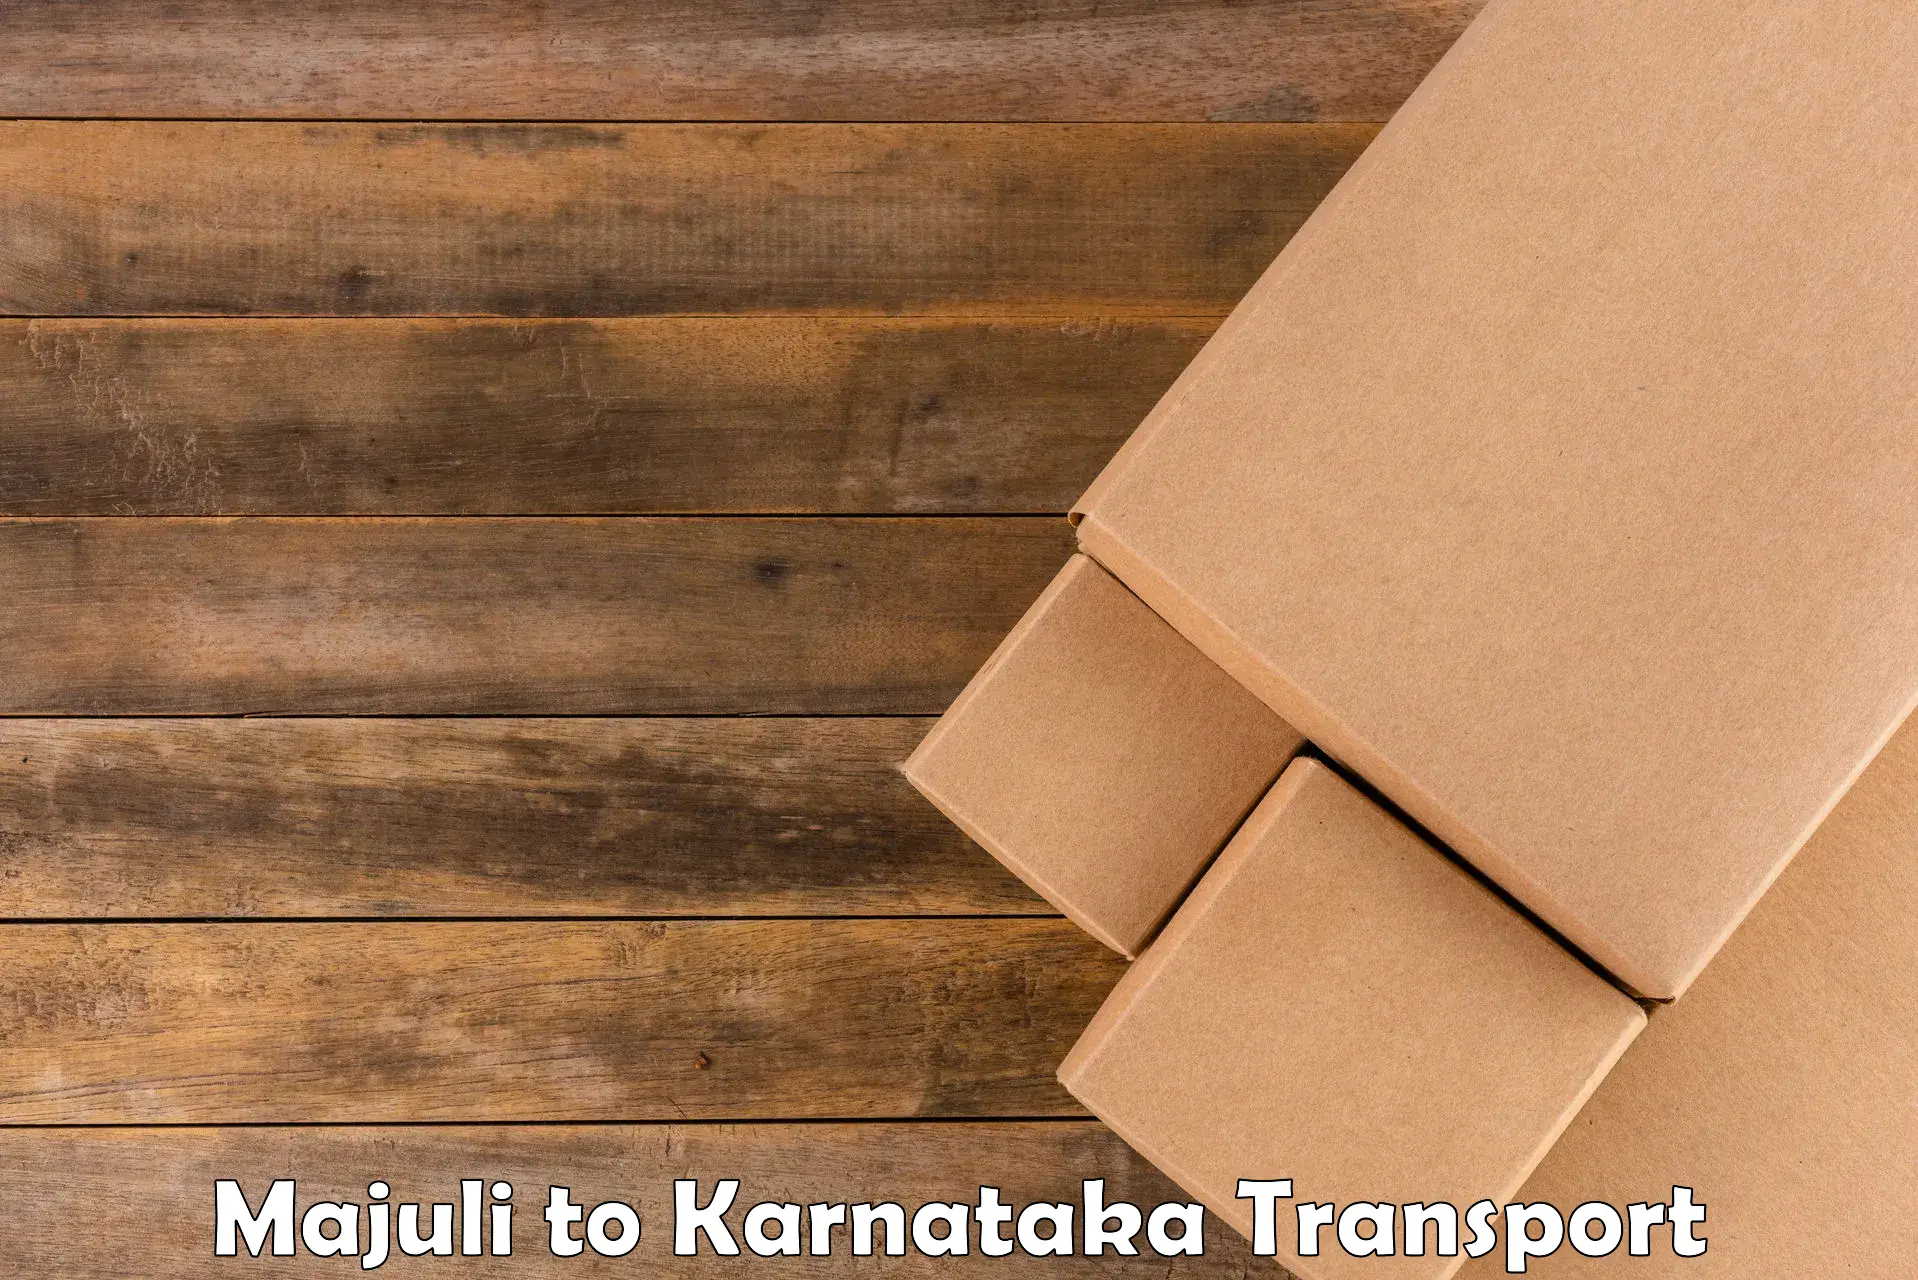 Furniture transport service Majuli to Srirangapatna